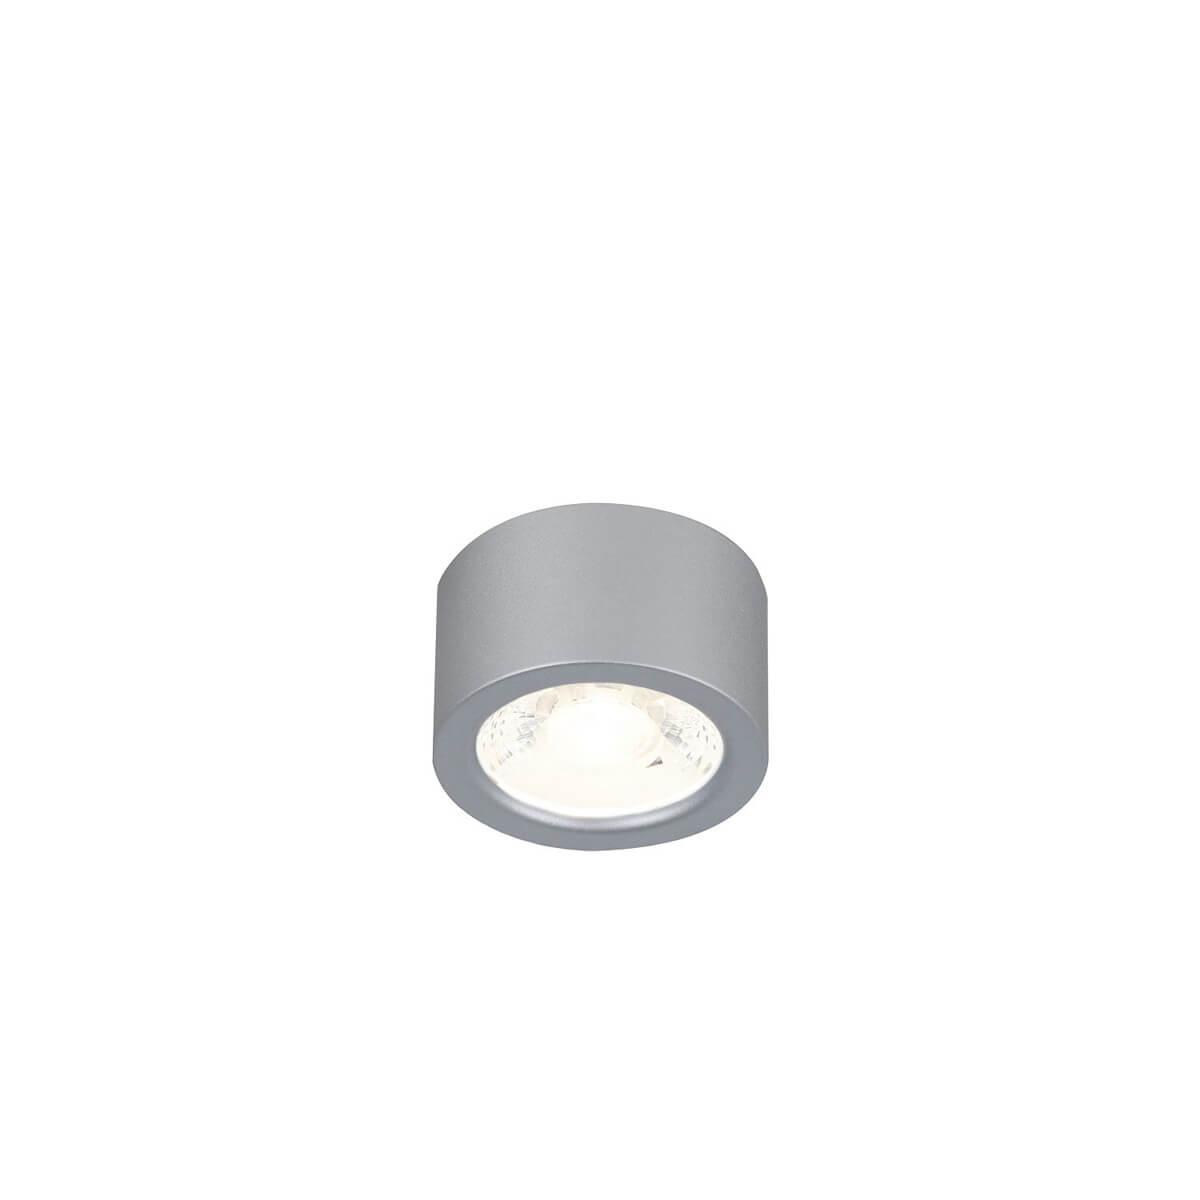 Потолочный светодиодный светильник Favourite Deorsum 2808-1U потолочный светодиодный светильник favourite deorsum 2808 1c